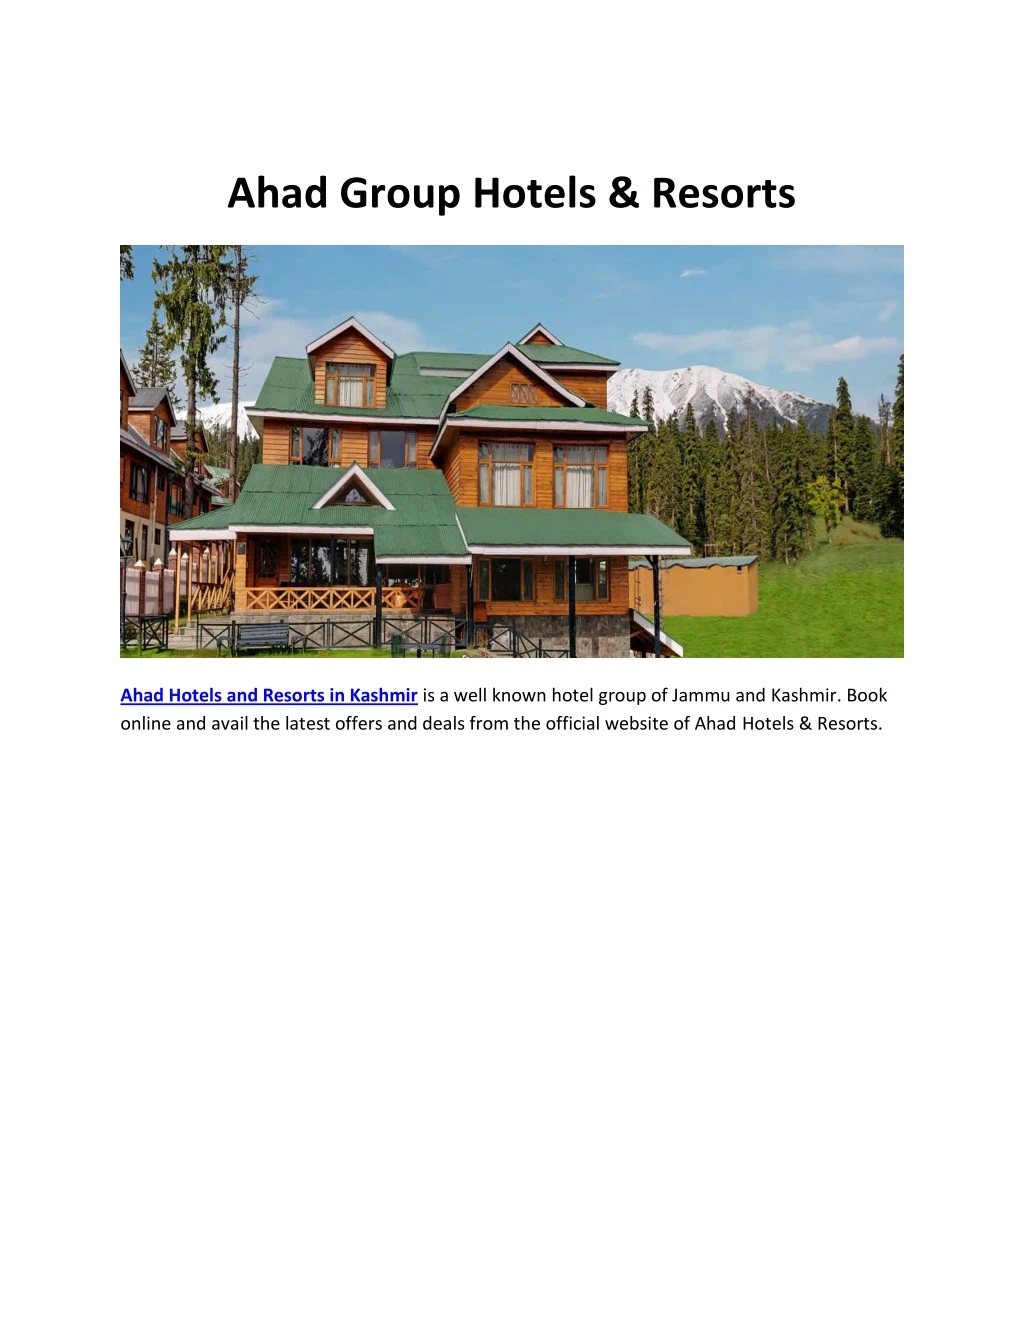 ahad group hotels resorts